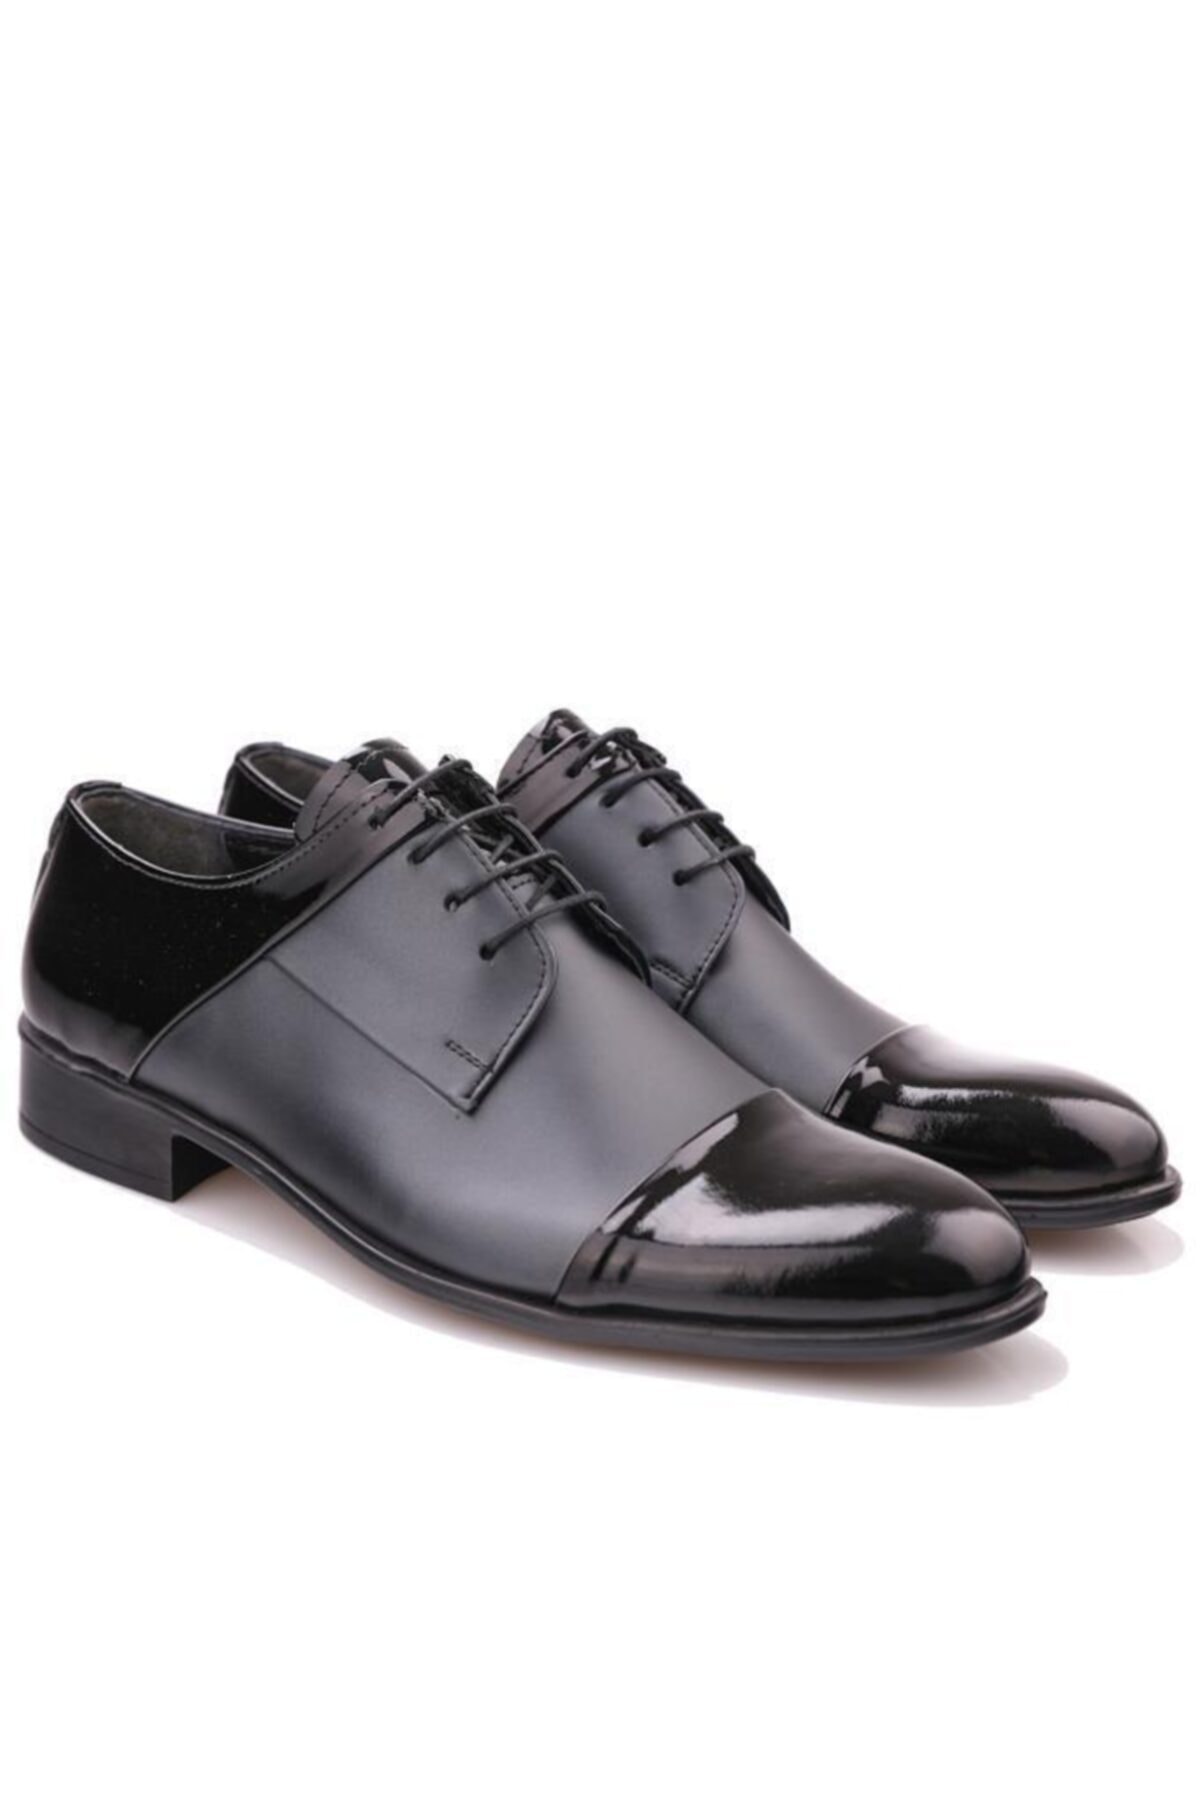 Calvano Hakiki Deri Erkek Klasik Ayakkabı